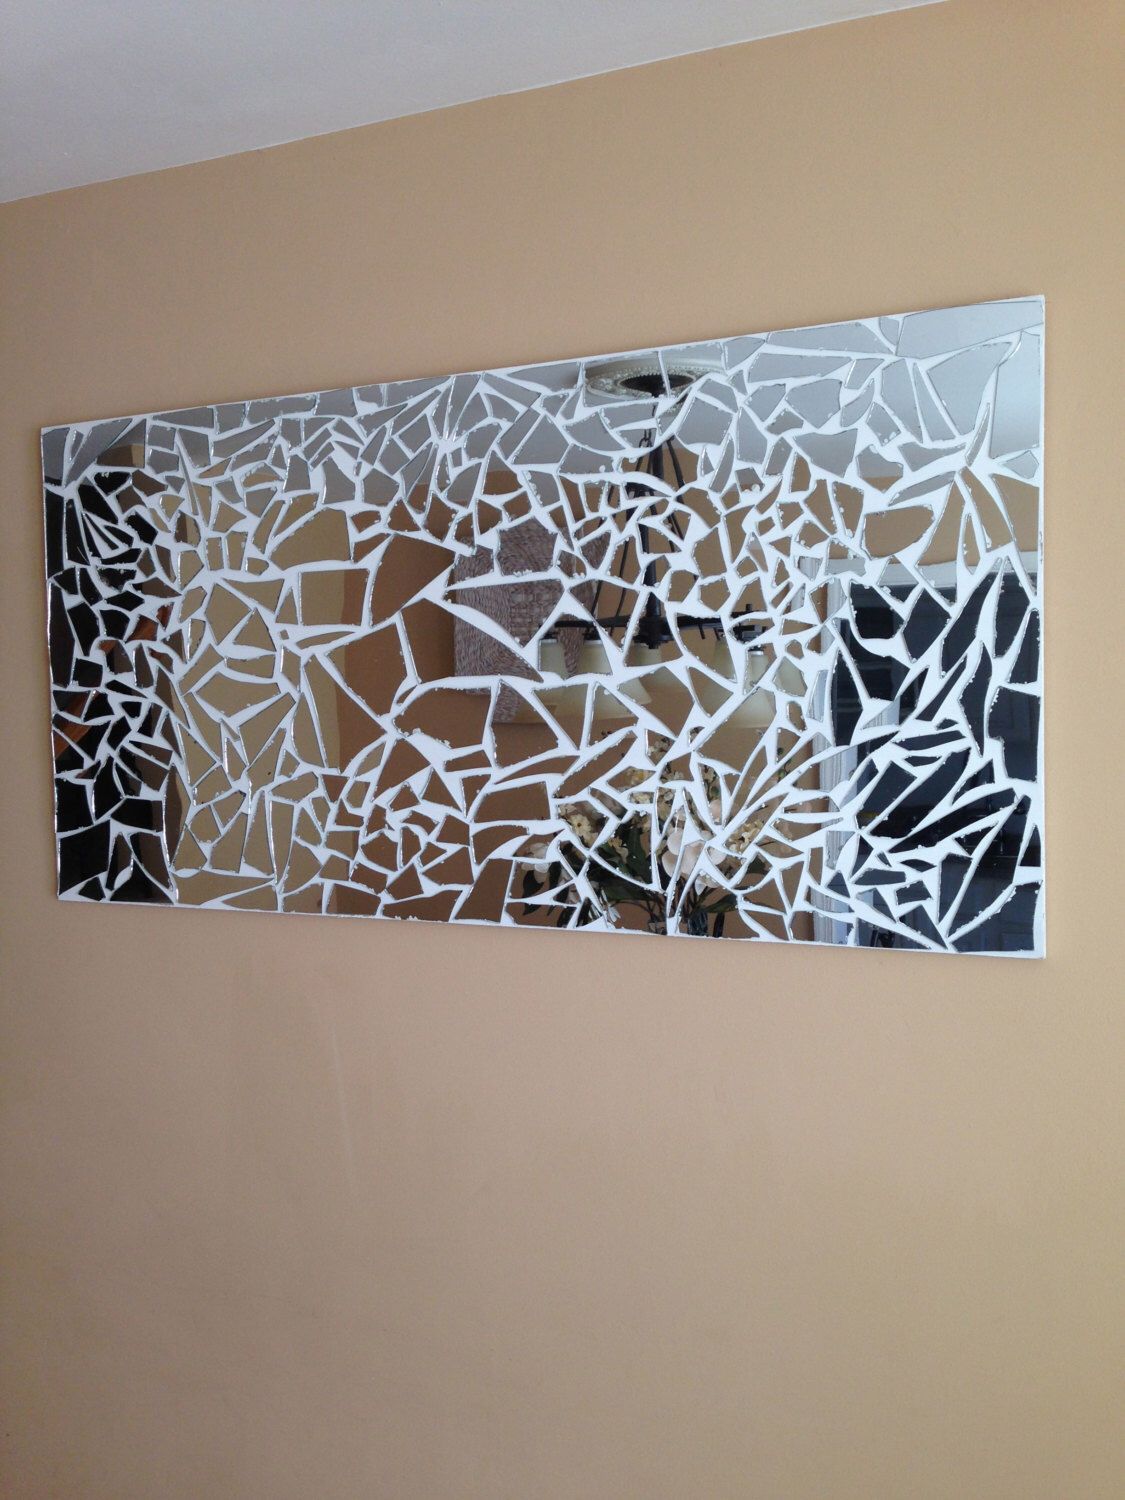 Broken Glass Shards for a Textured Wall Piece